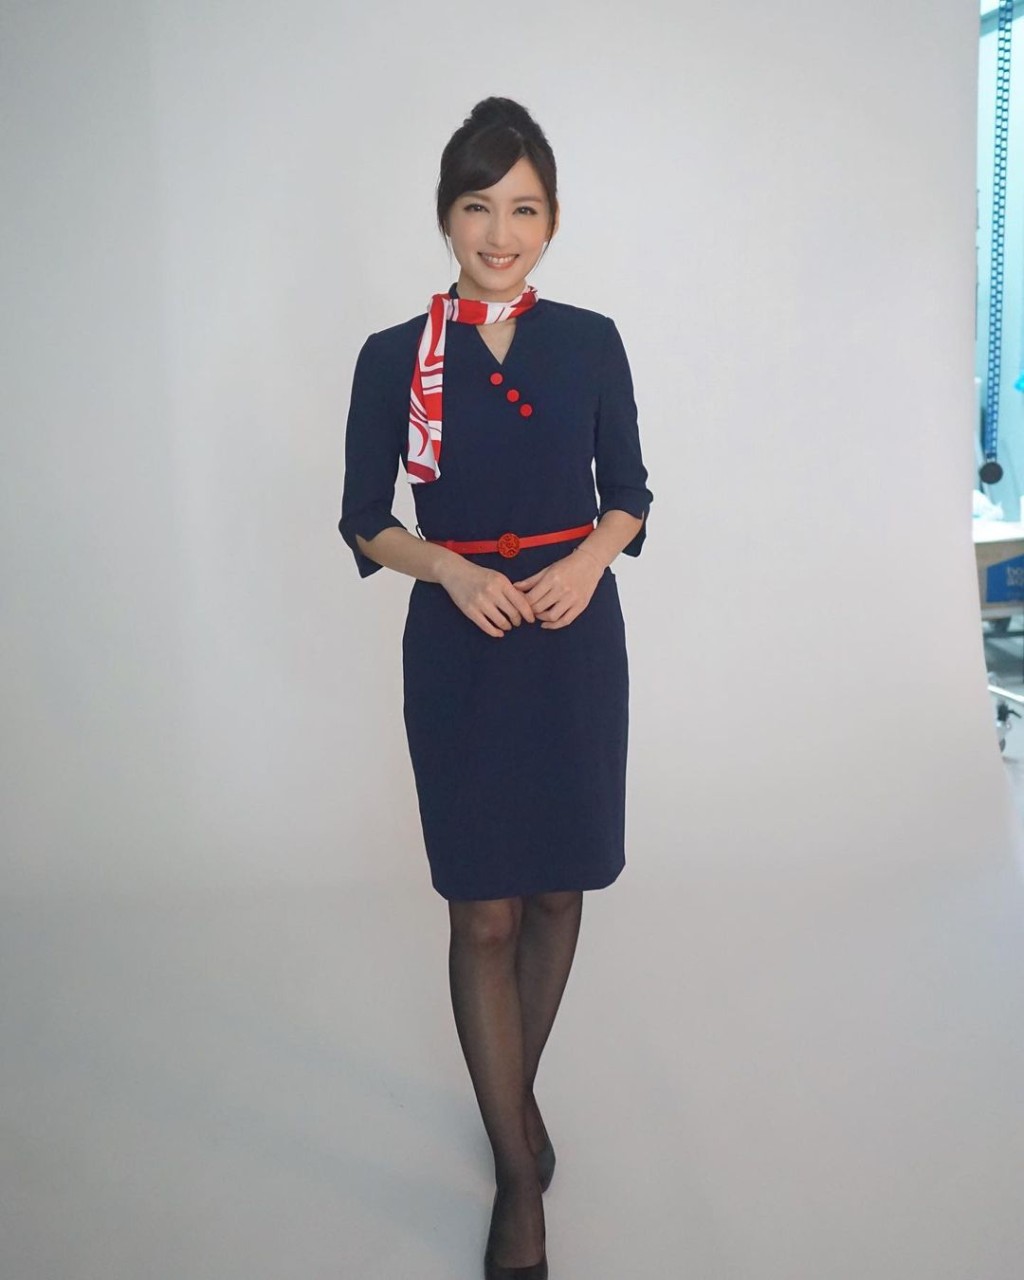 陈嘉倩贴出拍广告扮演不同职业的照片，其中一个造型是空姐。